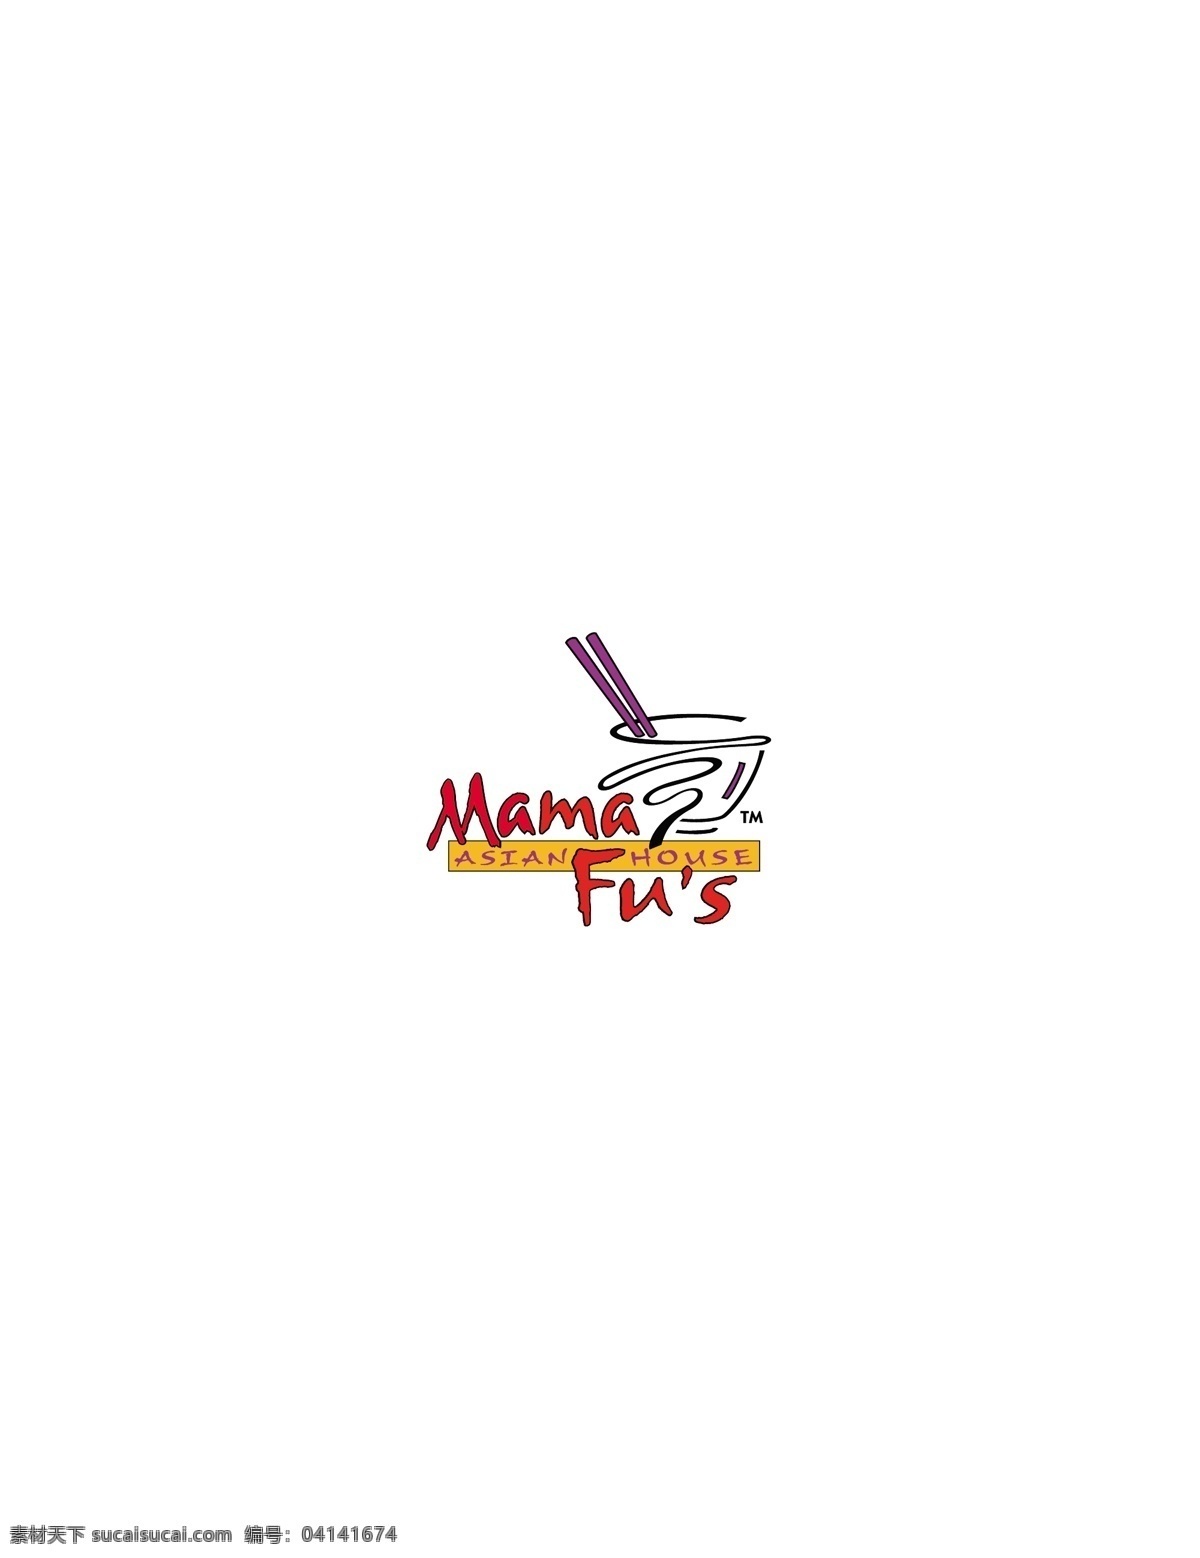 logo大全 logo 设计欣赏 商业矢量 矢量下载 mamafus 食物 品牌 标志 标志设计 欣赏 网页矢量 矢量图 其他矢量图